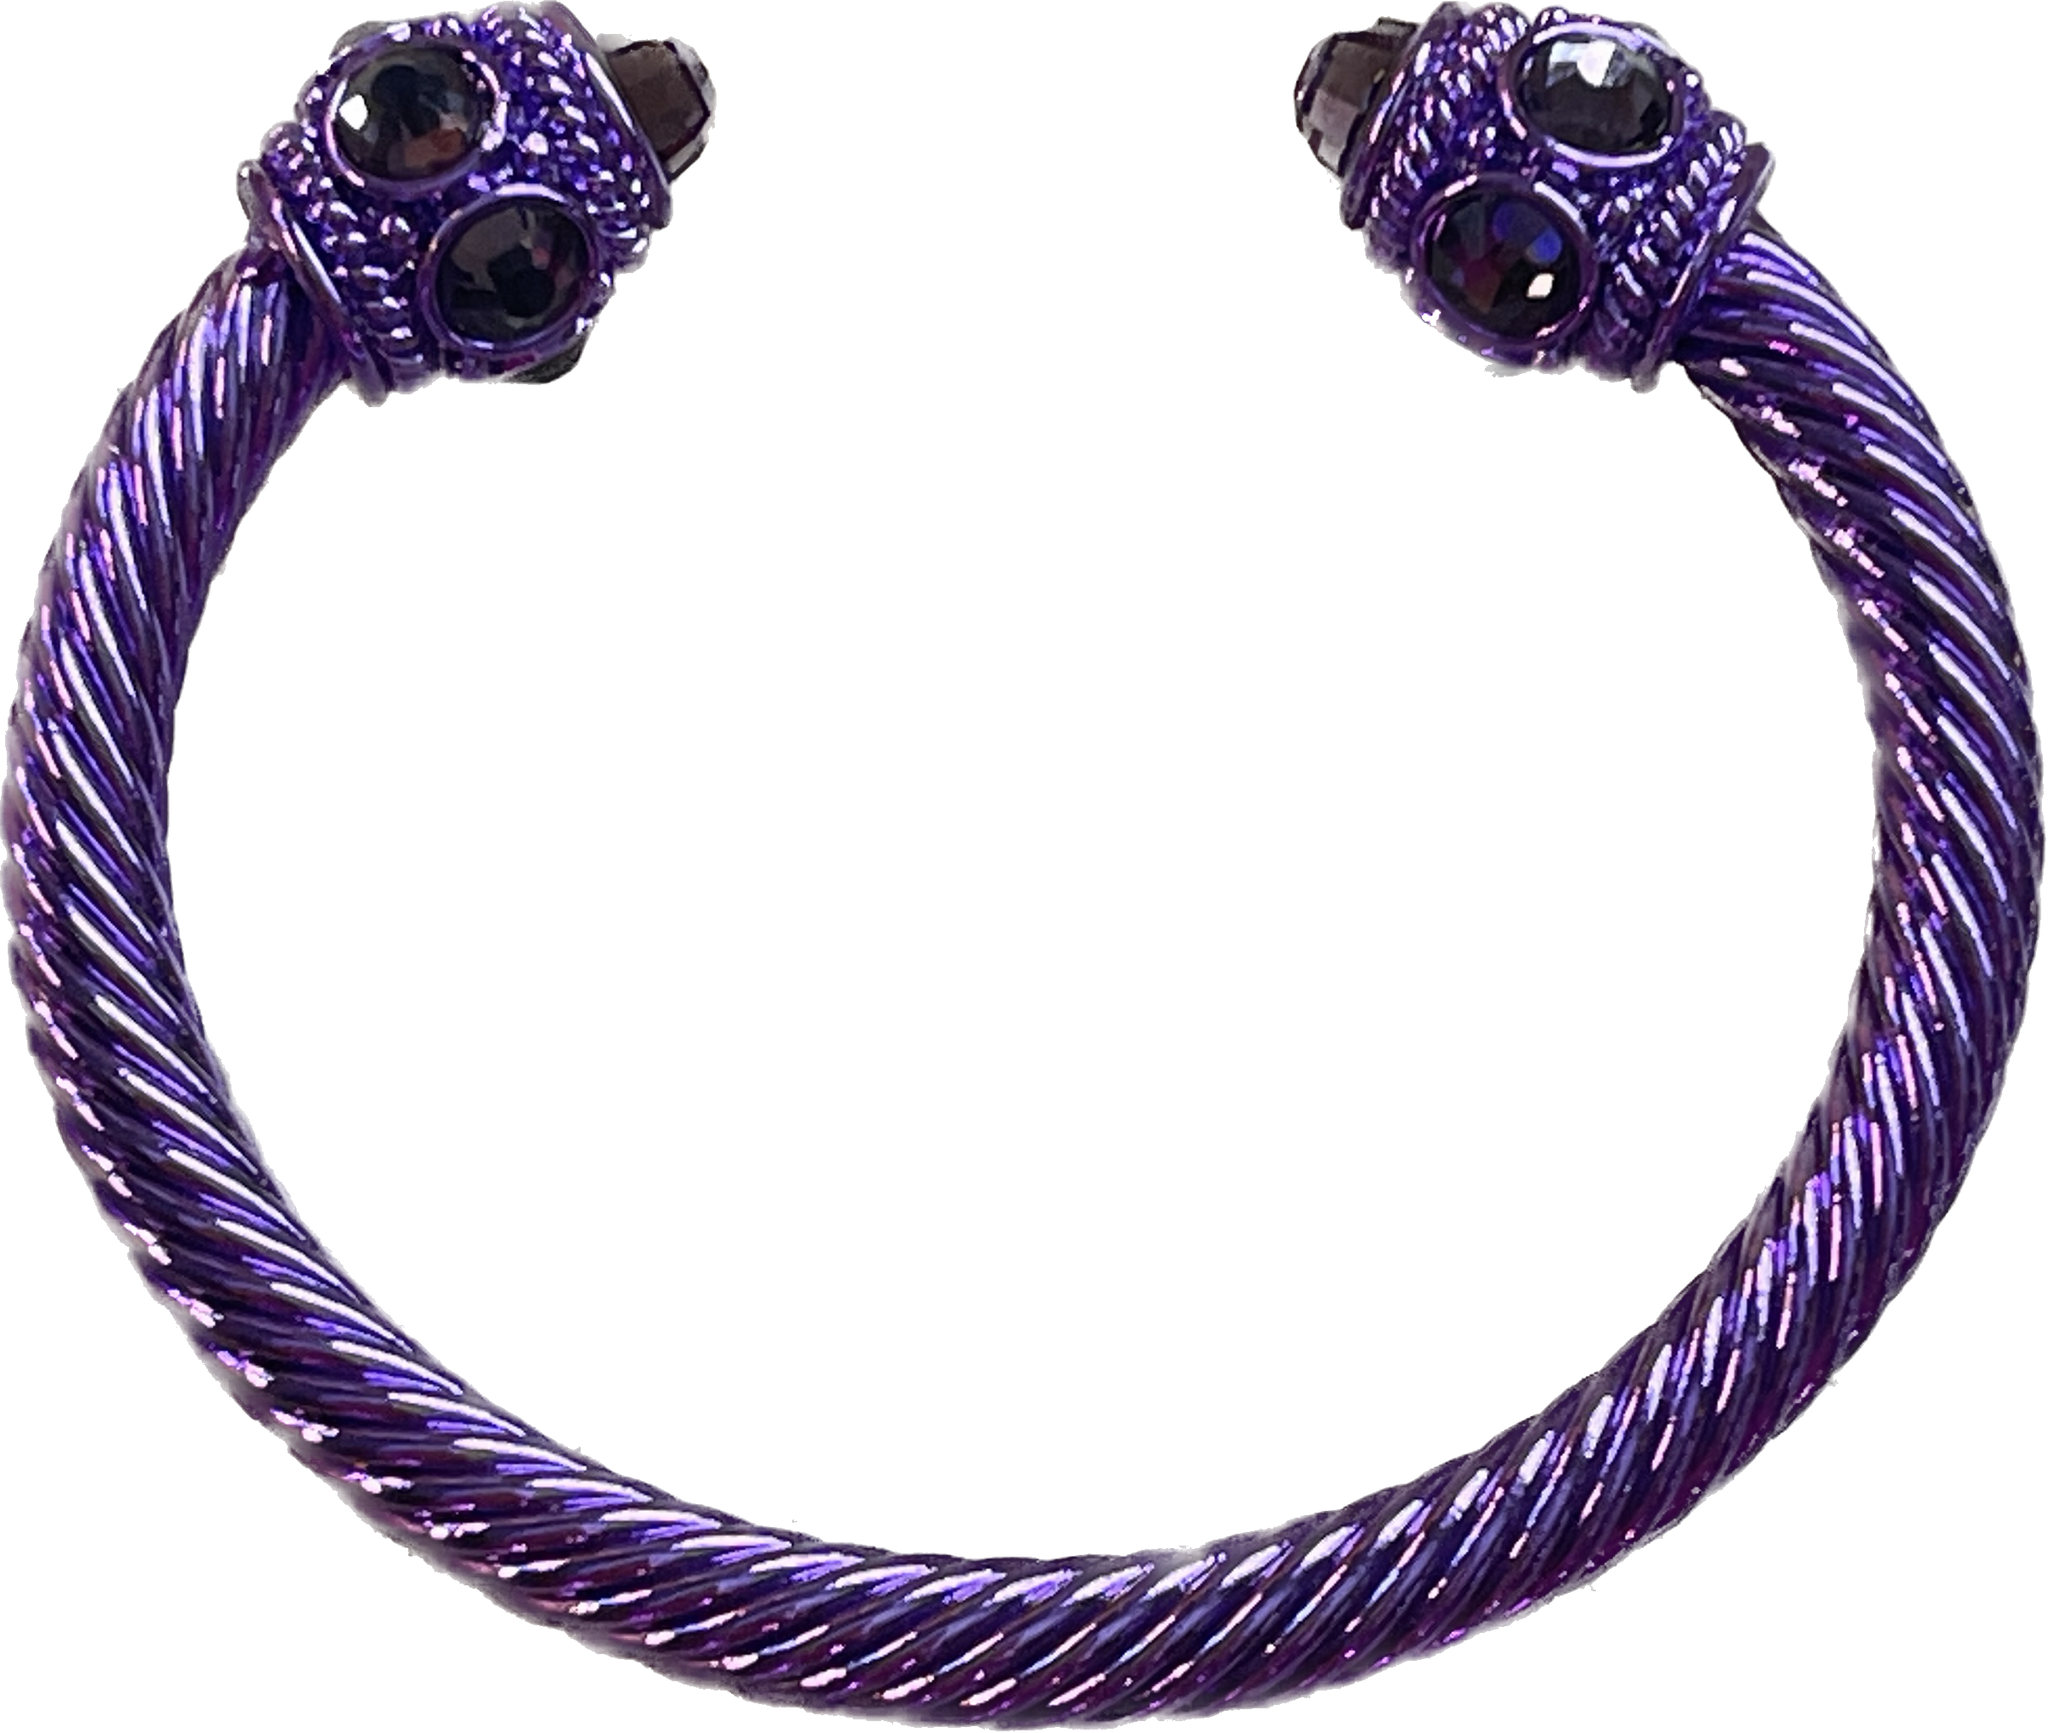 Purple Cable Bracelet